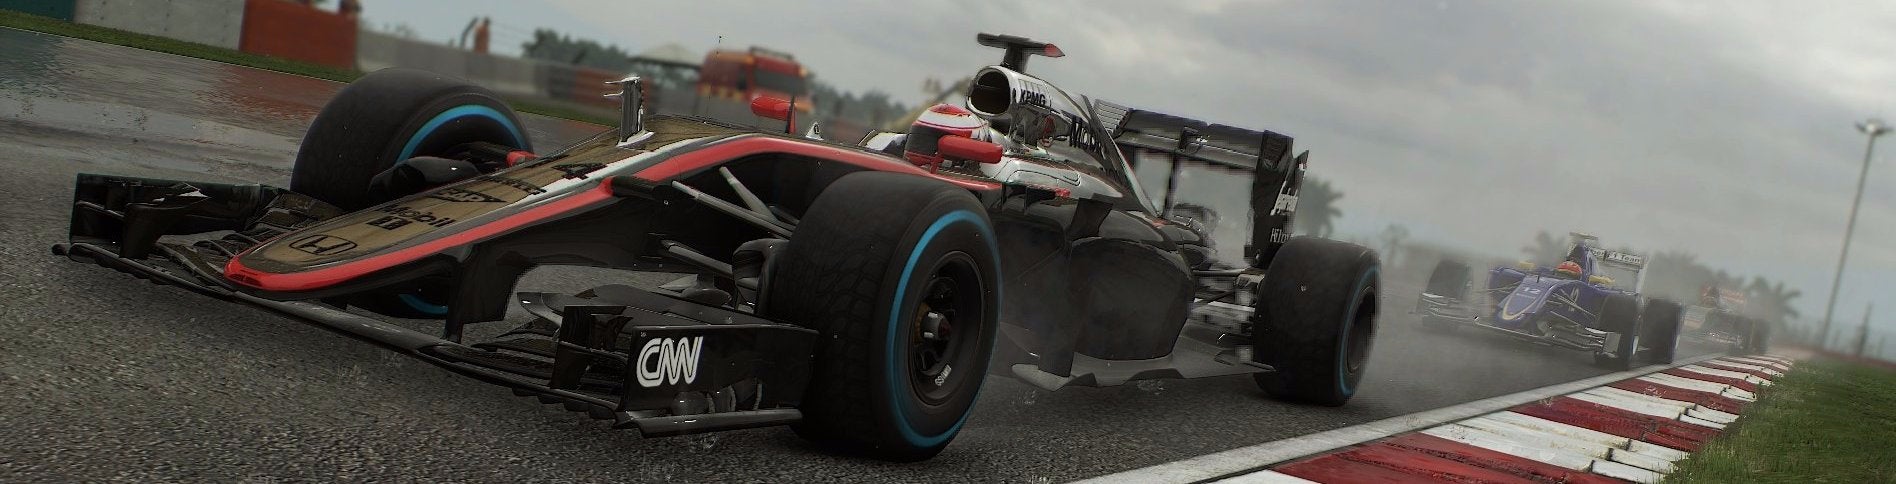 Obrazki dla F1 2015 wprowadza nieco dramatyzmu do serii Codemasters